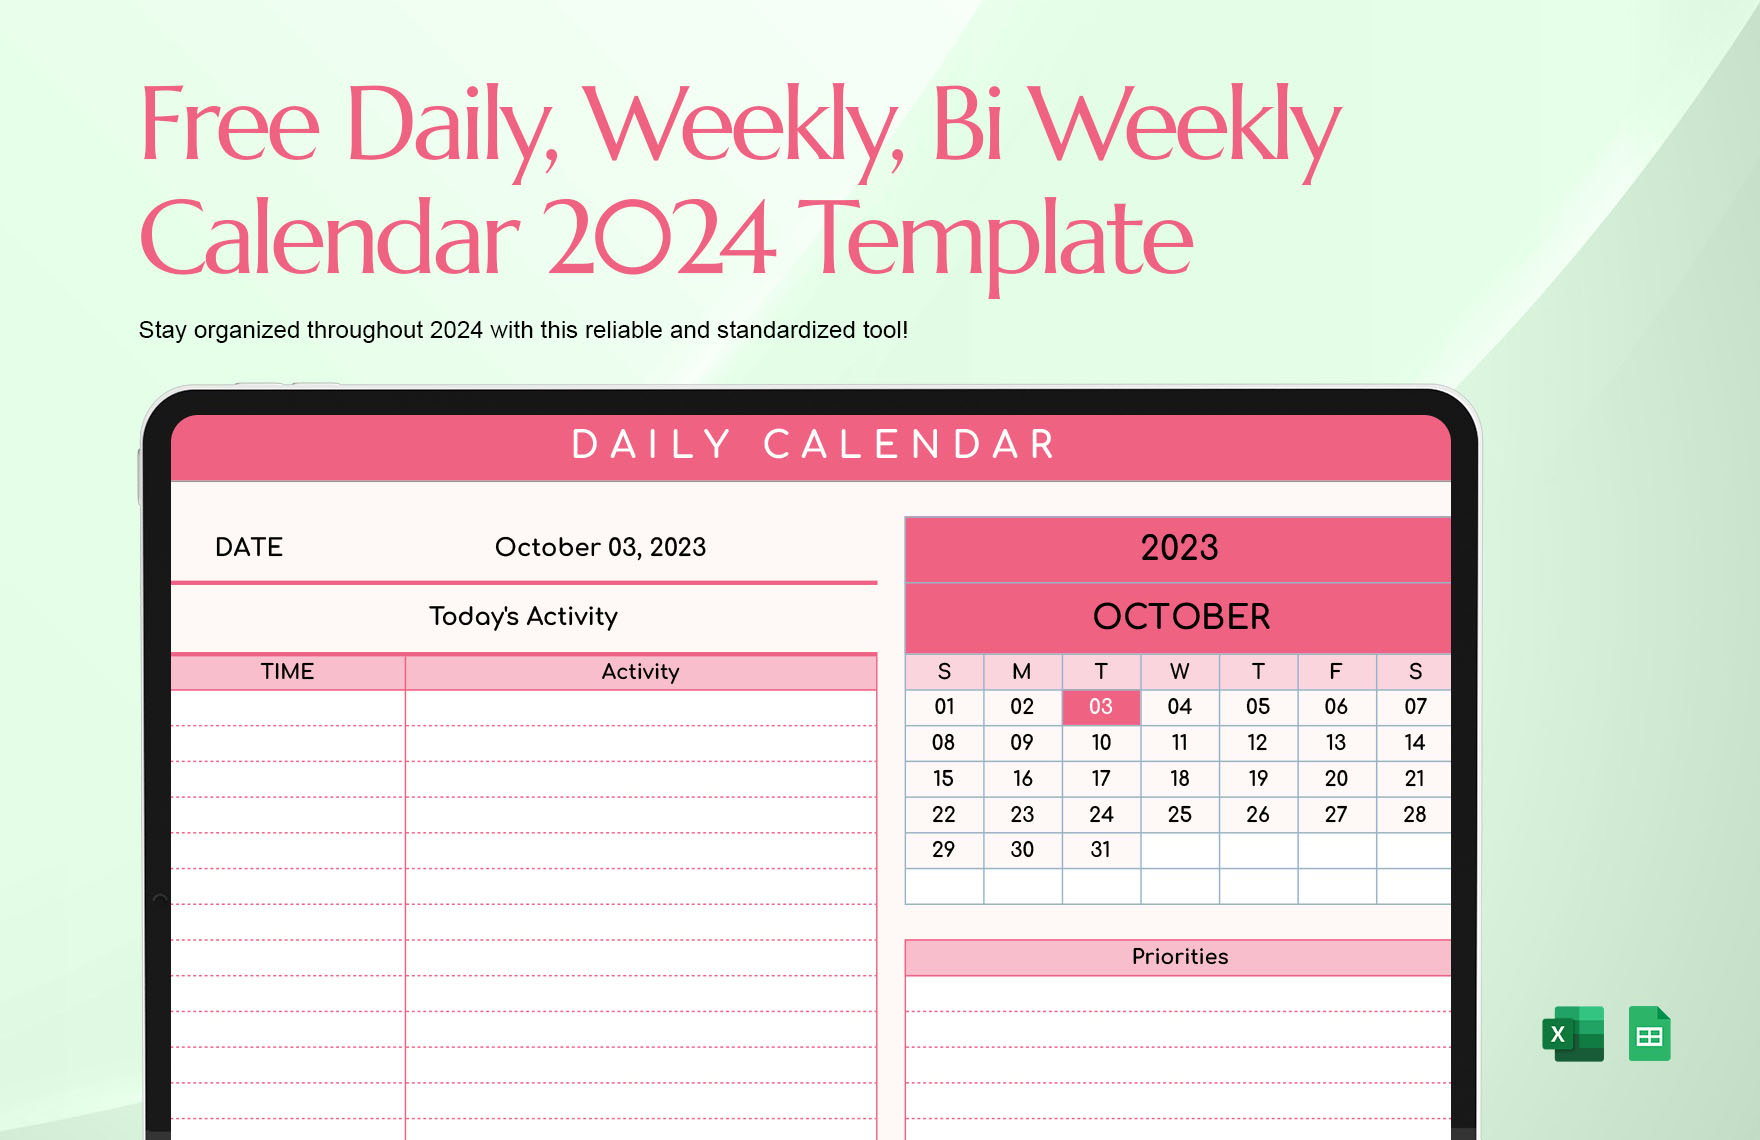 Daily, Weekly, Bi Weekly Calendar 2024 Template